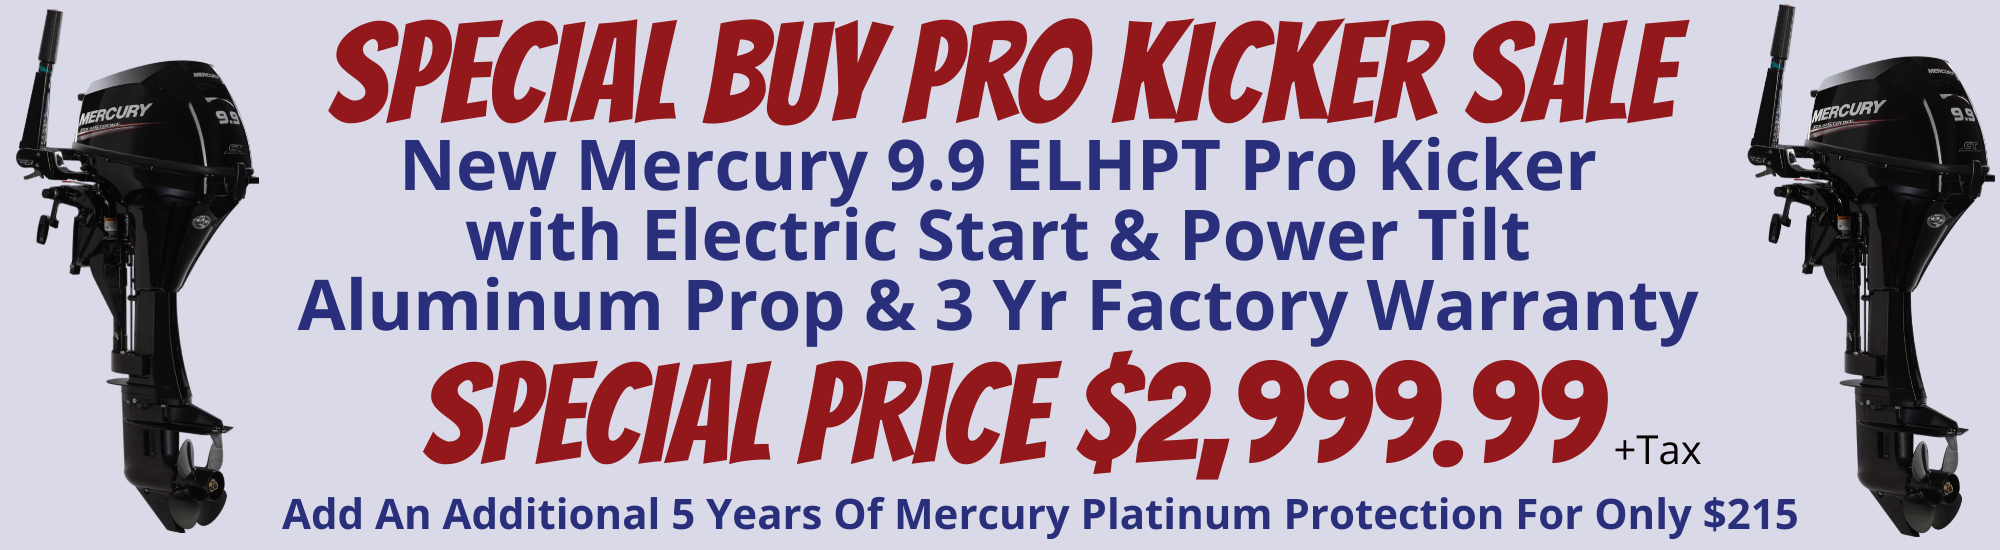 Website 9.9 Pro Kicker Sale